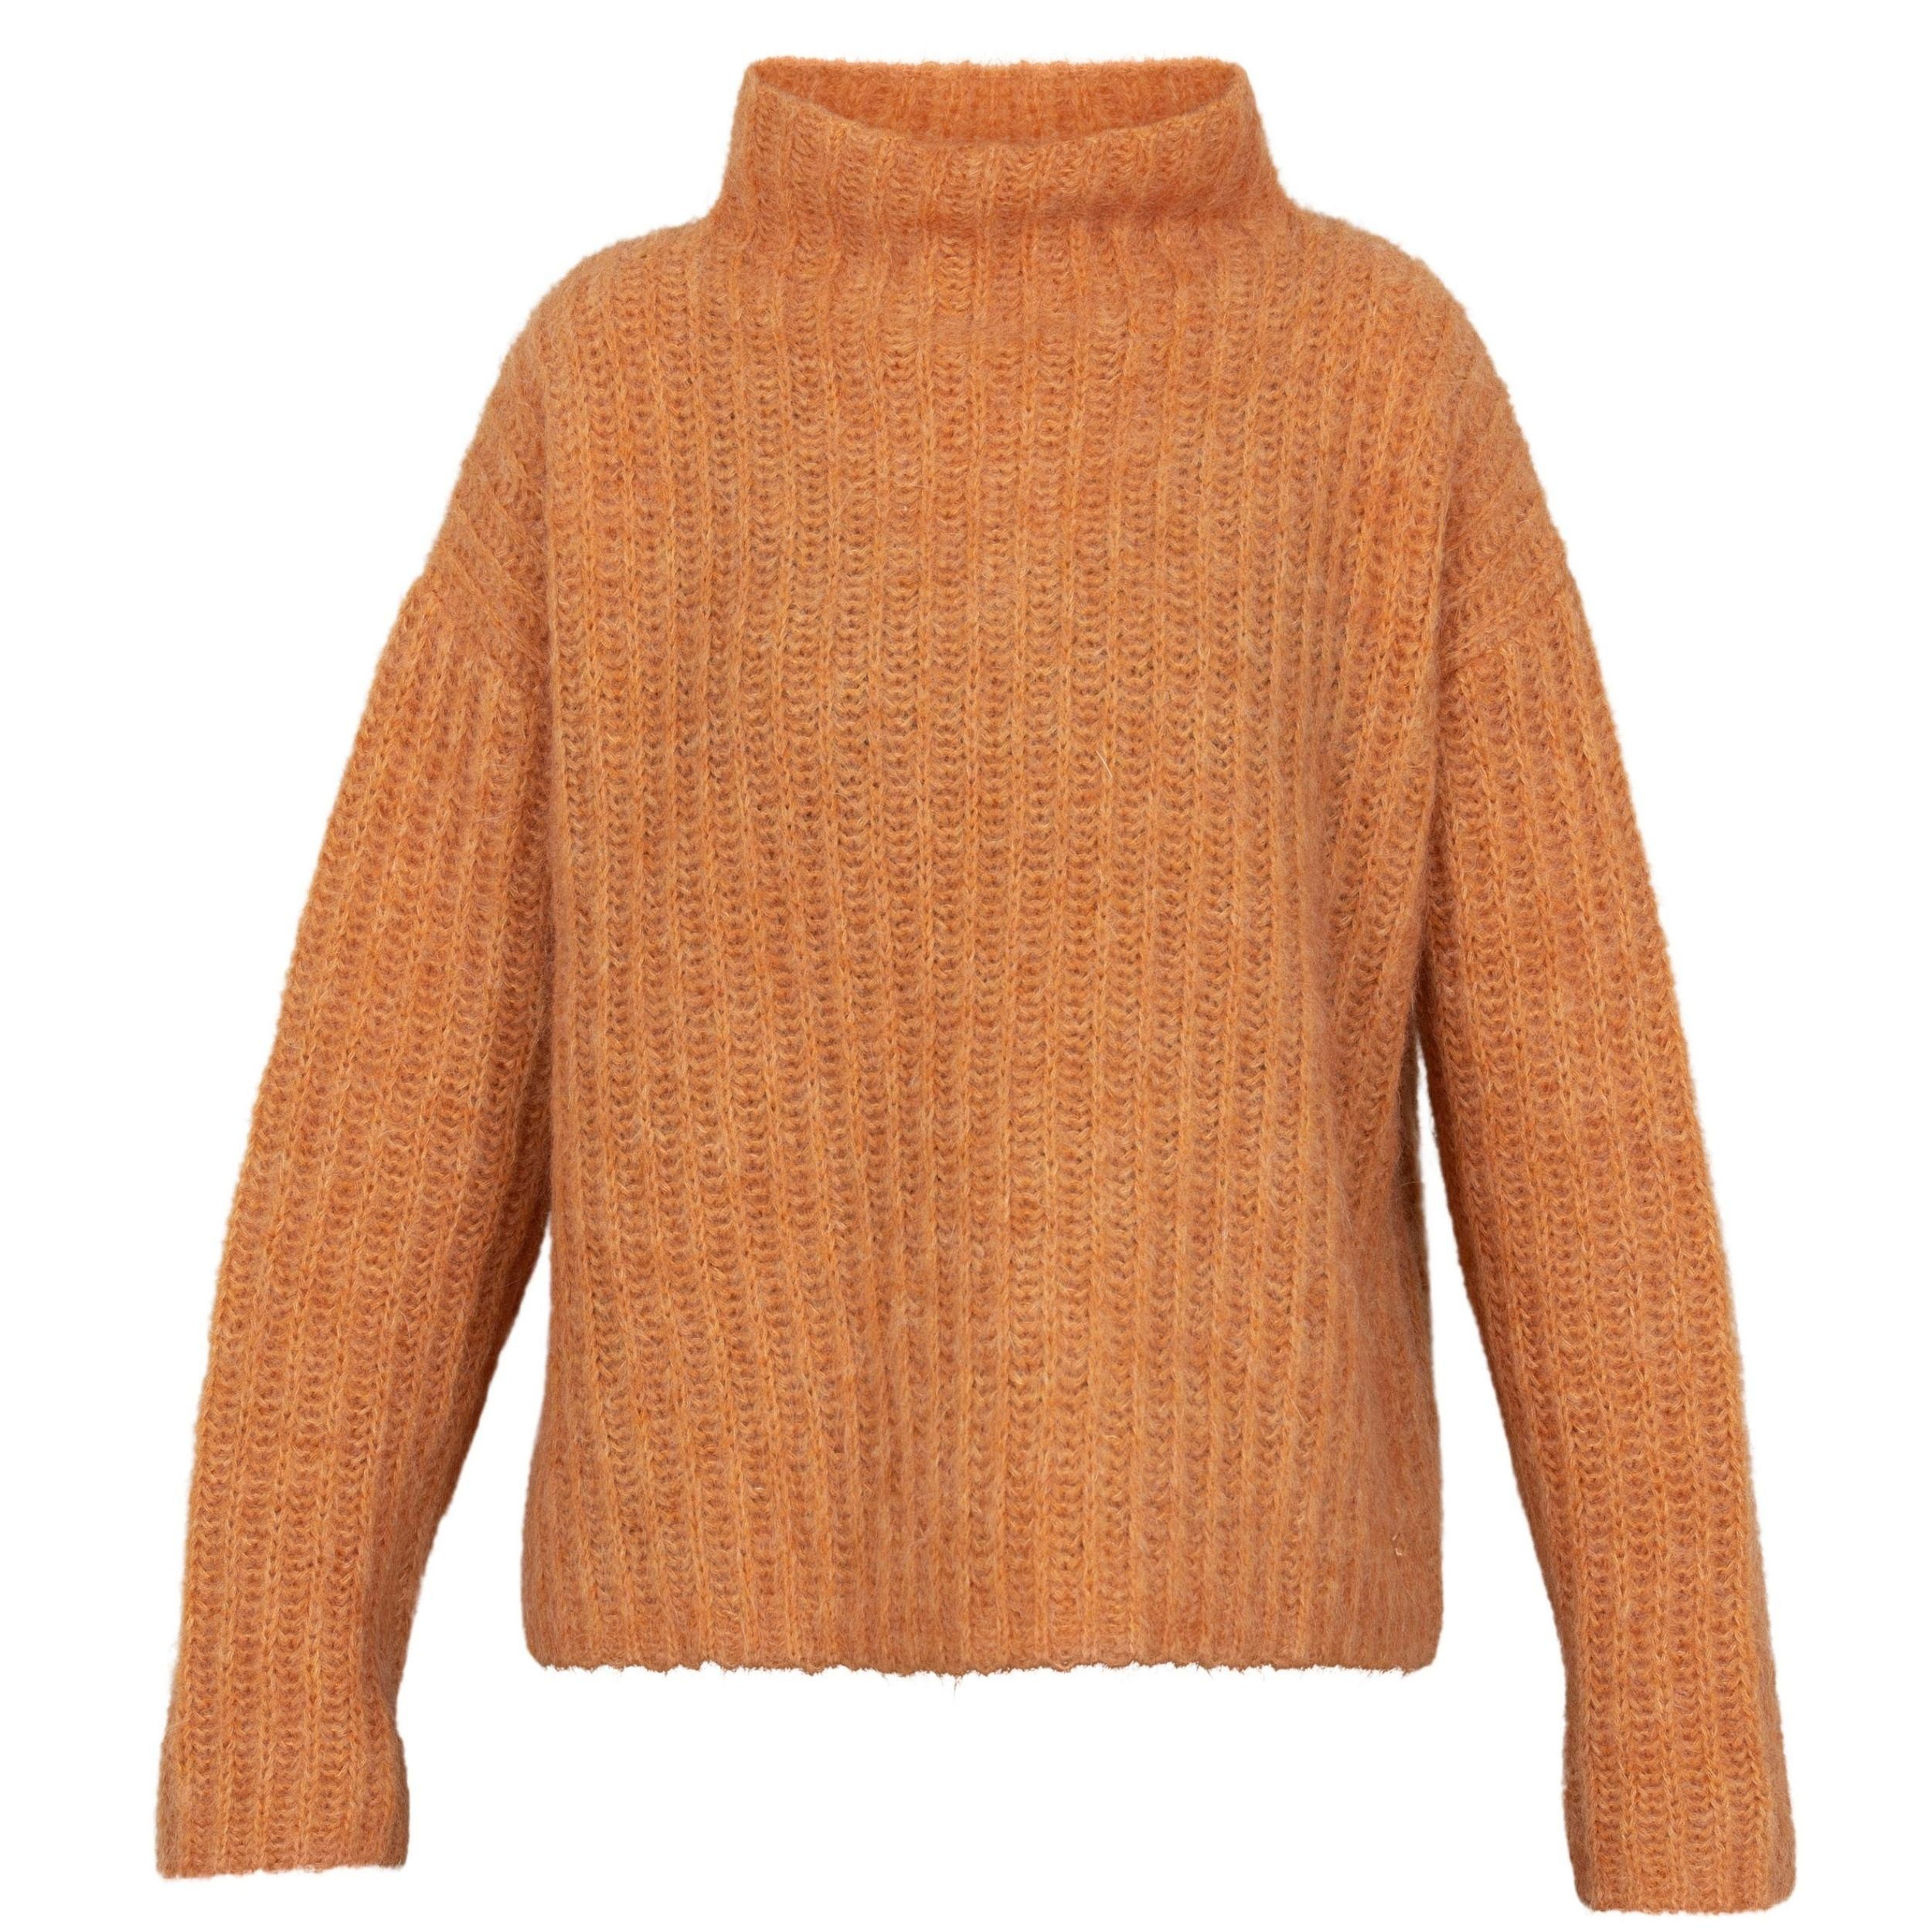 Blue Sportswear Stehkragenpullover Verona Knit Strickpullover mit Wolle in verschiedenen Farben Orange